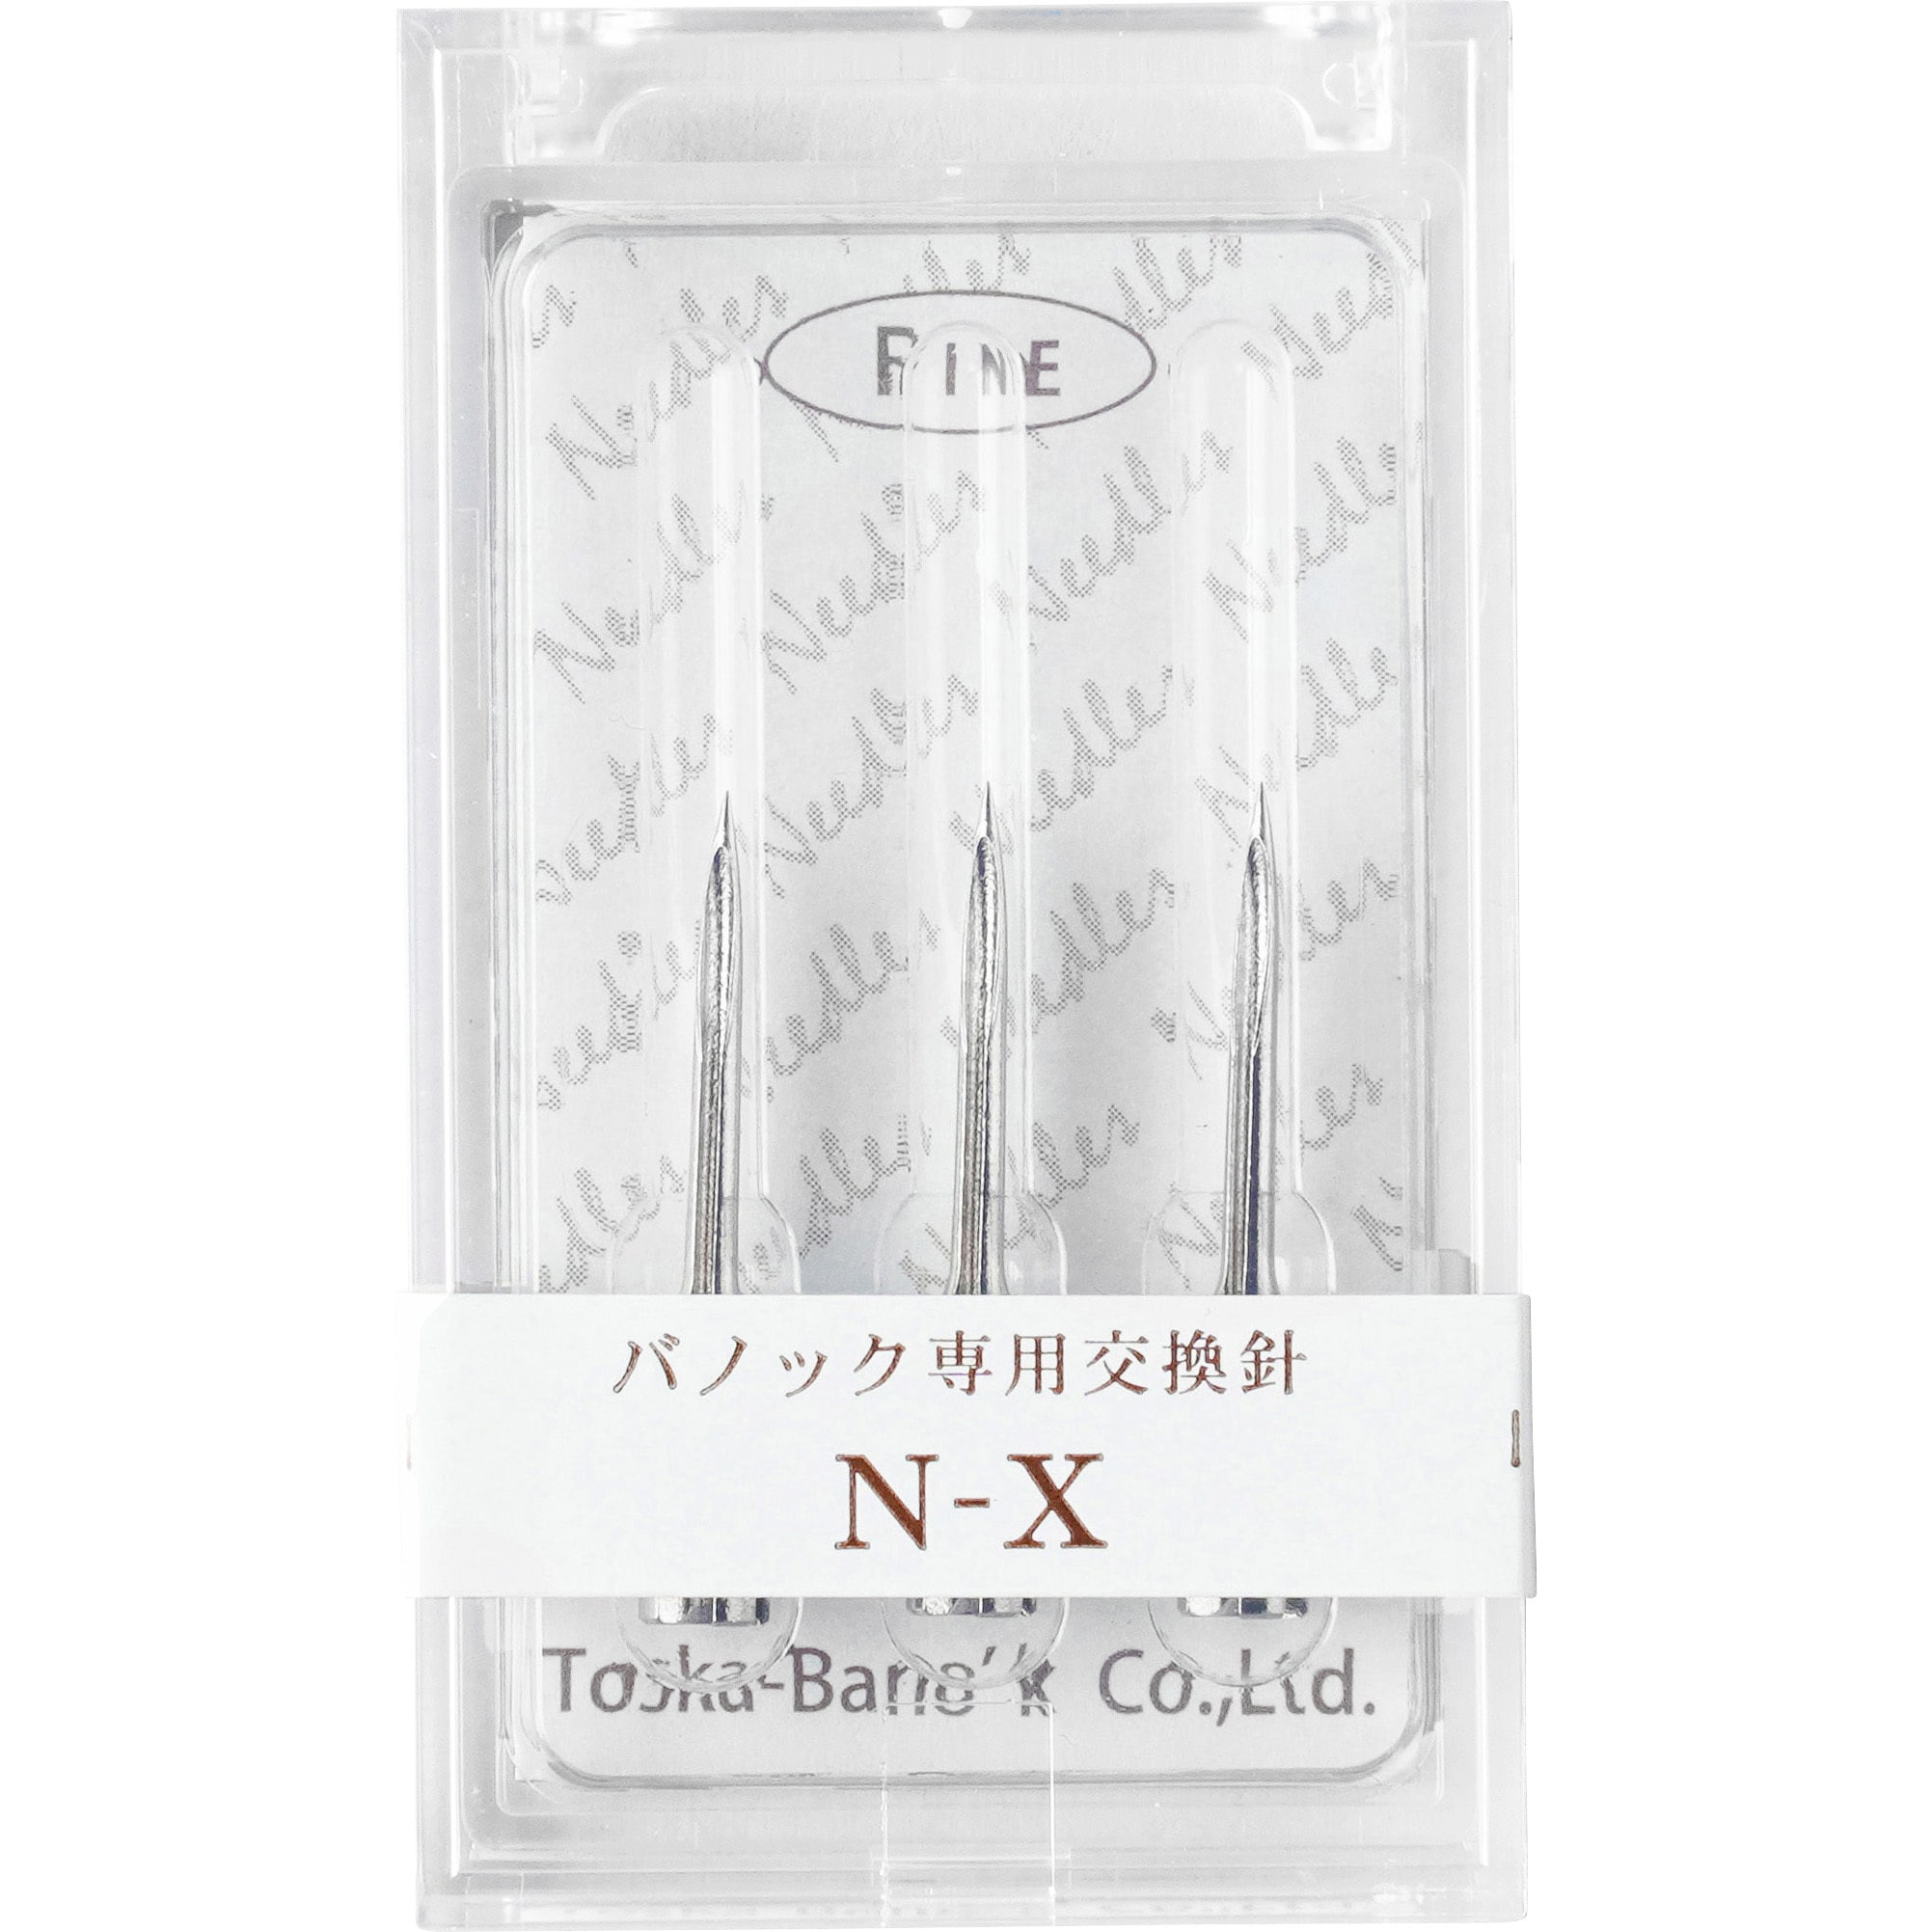 日本代理店正規品 トスカバノック バノック 針 N-XLNEXL 1箱 3本